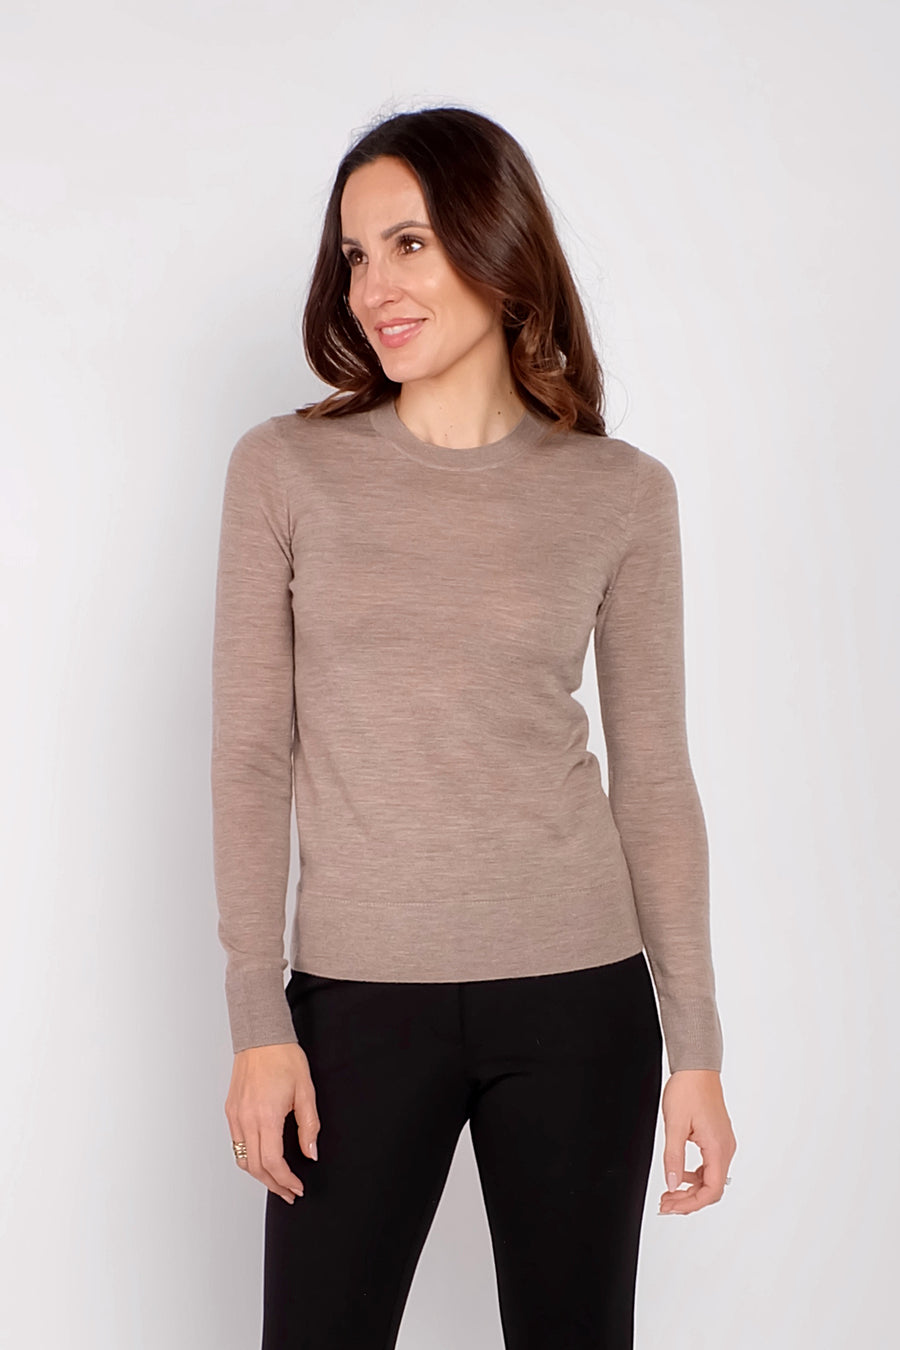 women's beige long sleeve cashmere sweater